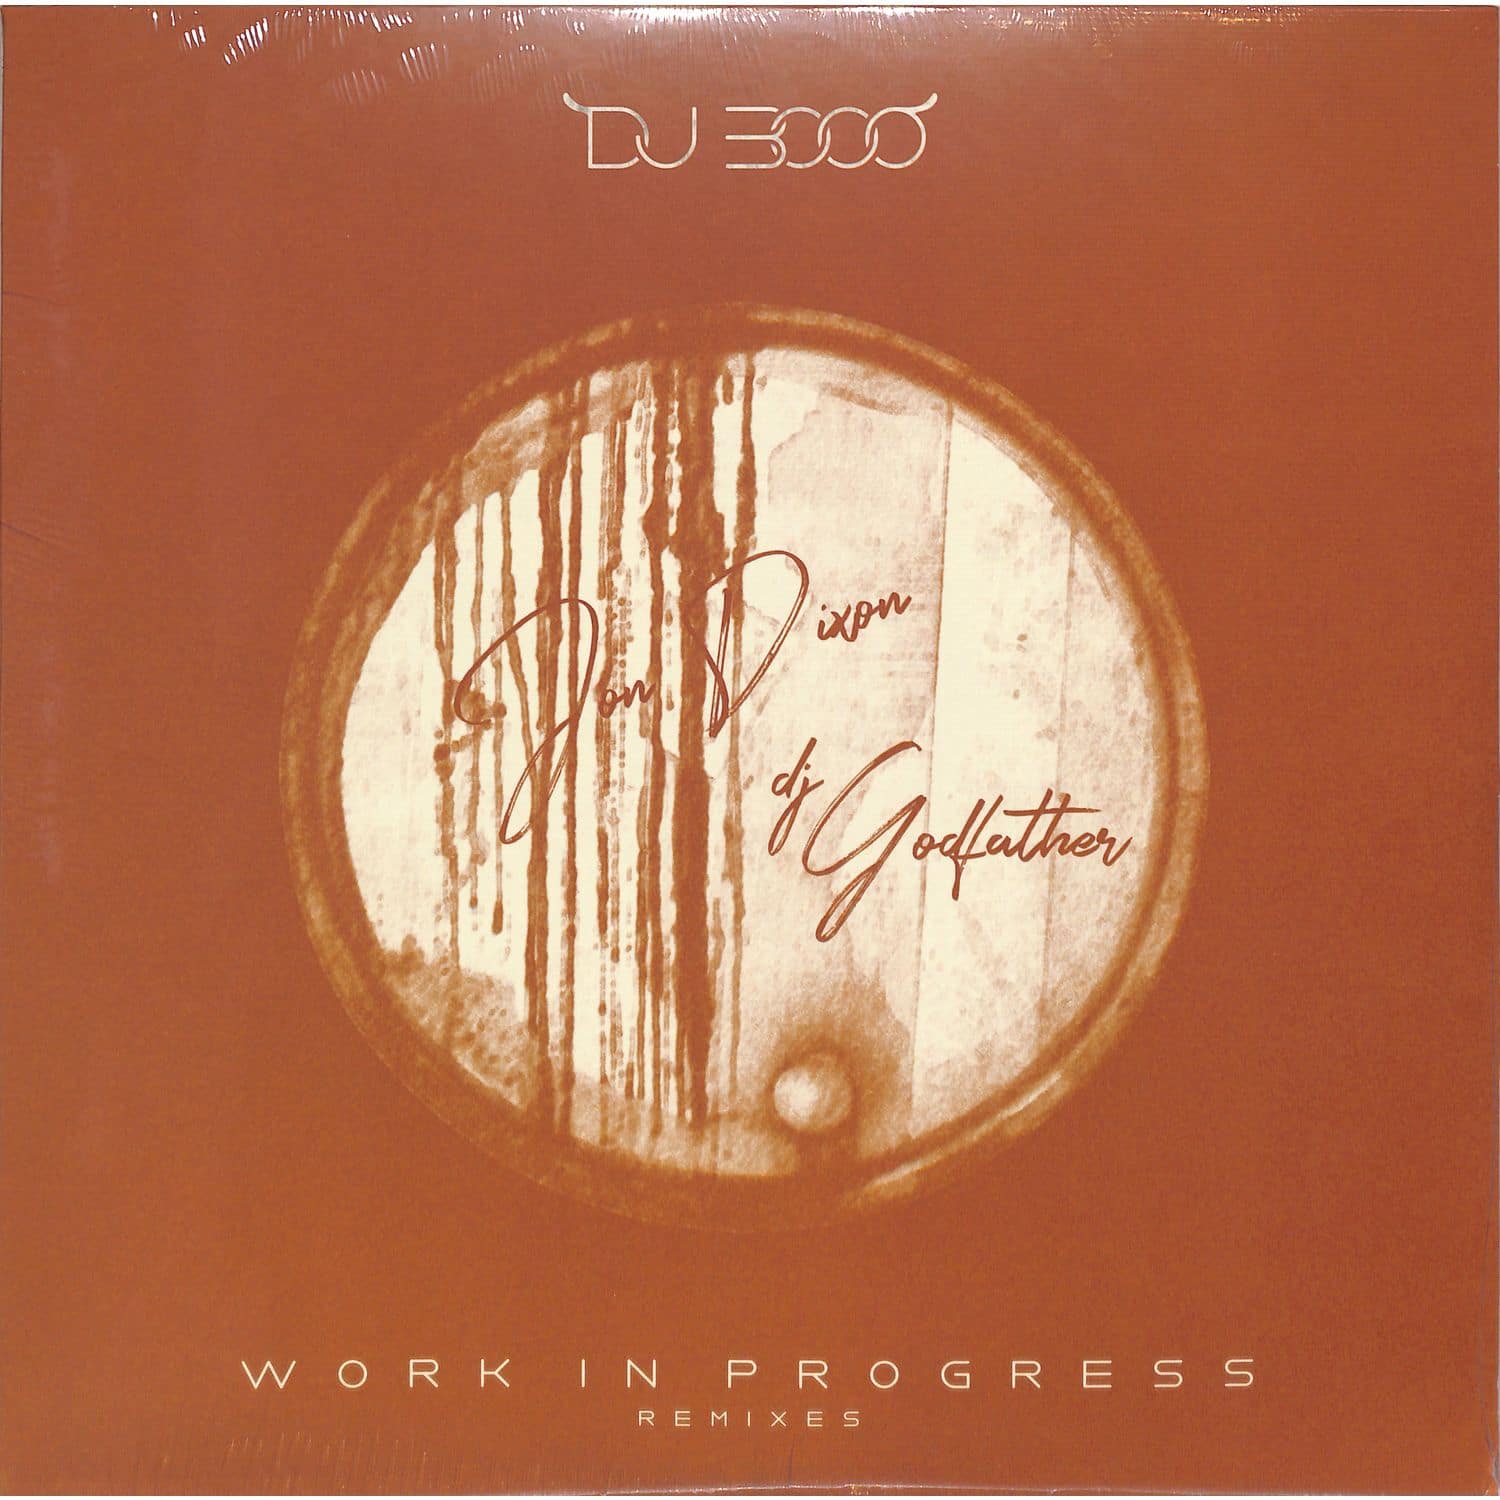 DJ 3000 - WORK IN PROGRESS REMIXES